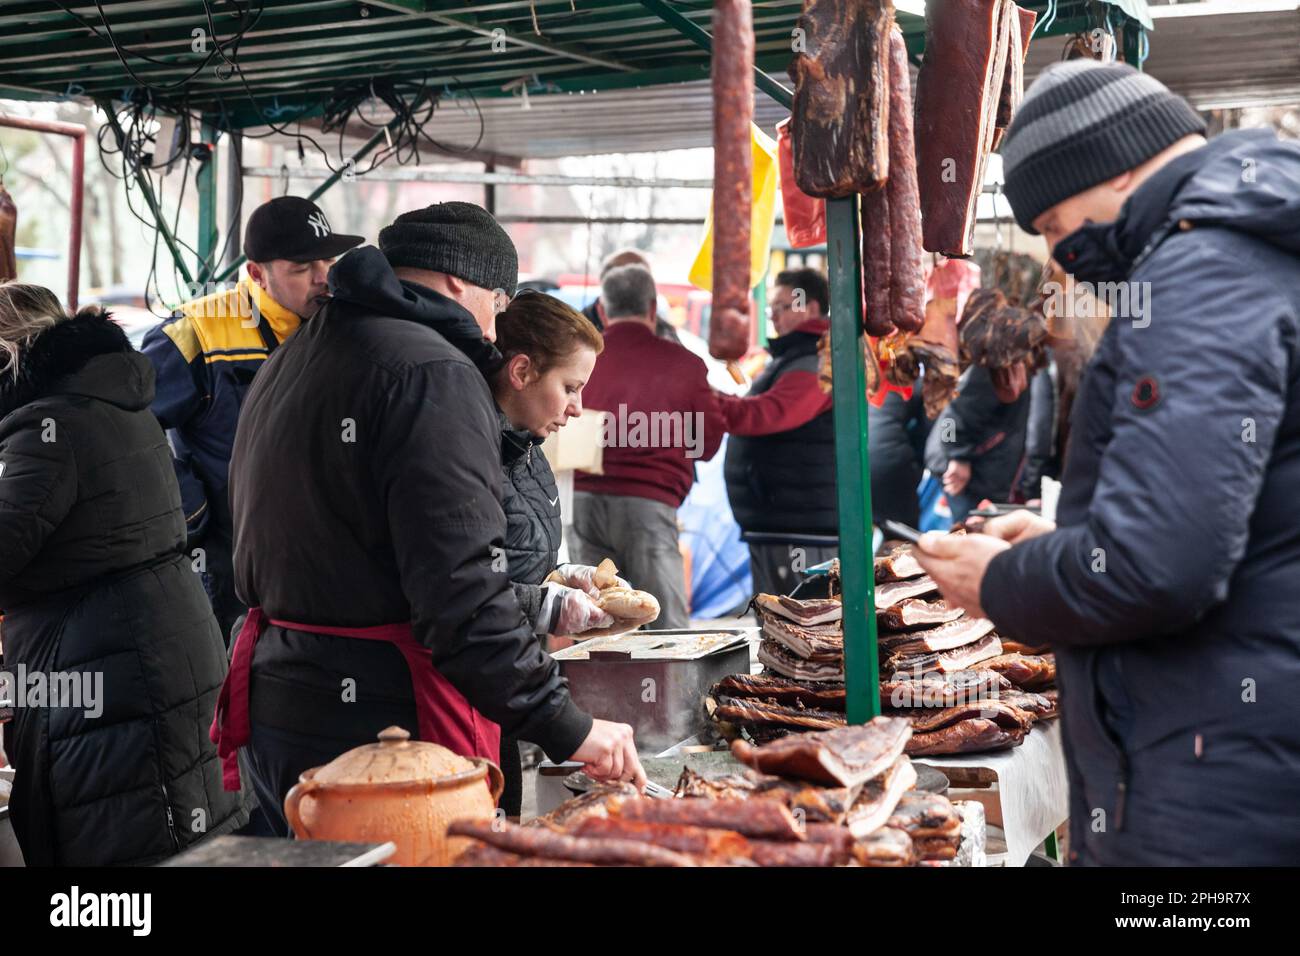 Bild eines Stalls des Kacarevo Marktes in Serbien, bei dem die Kunden das aufgehängte und trocknende Fleisch, wie Schinken und Würstchen, verkosten. Stockfoto